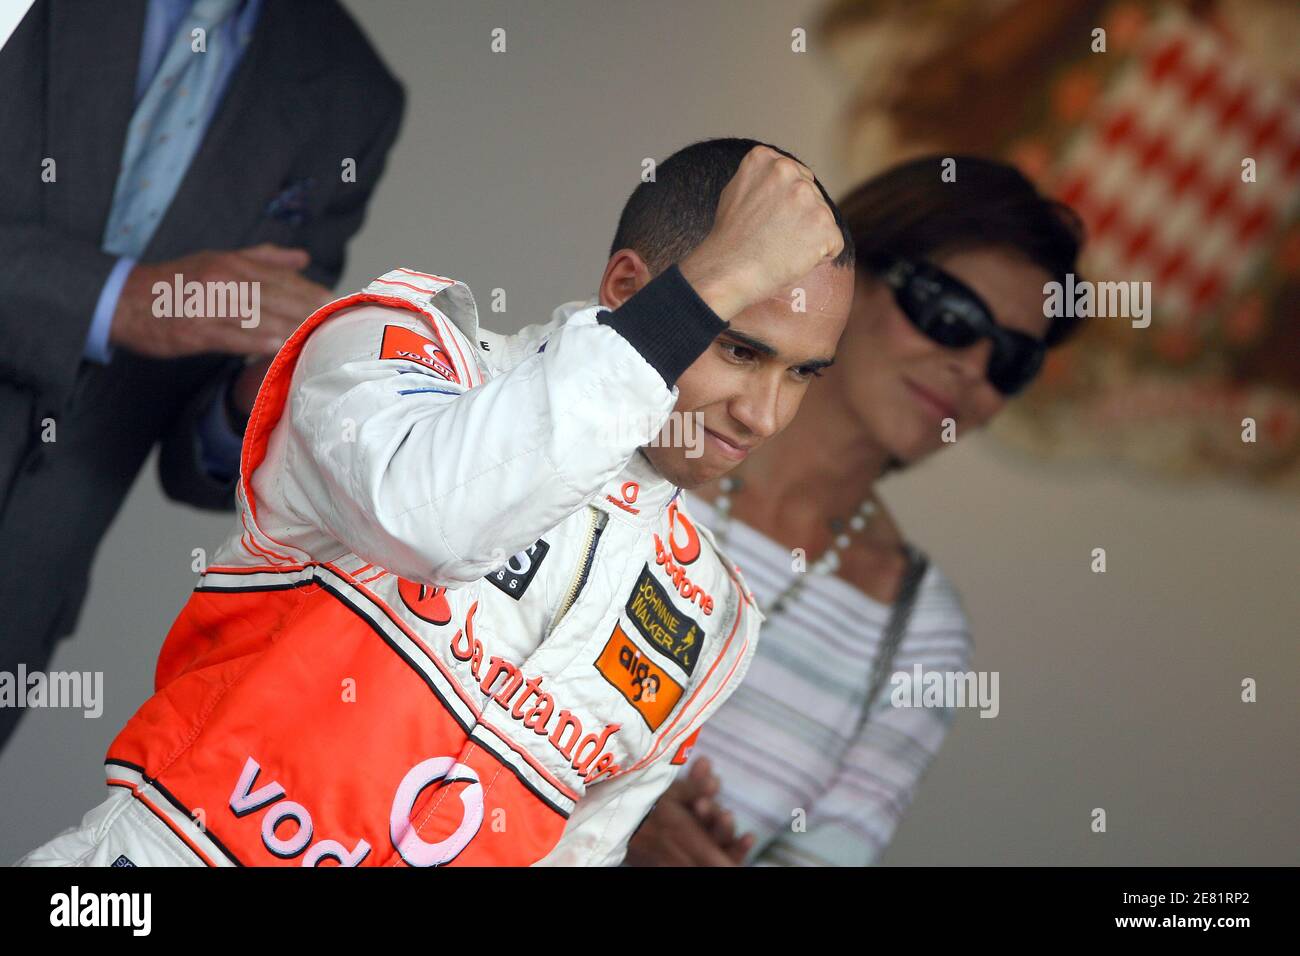 Il pilota britannico di Formula uno Lewis Hamilton della McLaren Mercedes ha ritratto sul podio dopo il Gran Premio di Monaco a Monte-Carlo, Monaco, il 27 maggio 2007. Alonso vince davanti ad Hamilton e massa. Foto di Frederic Nebinger/Cameleon/ABACAPRESS.COM Foto Stock